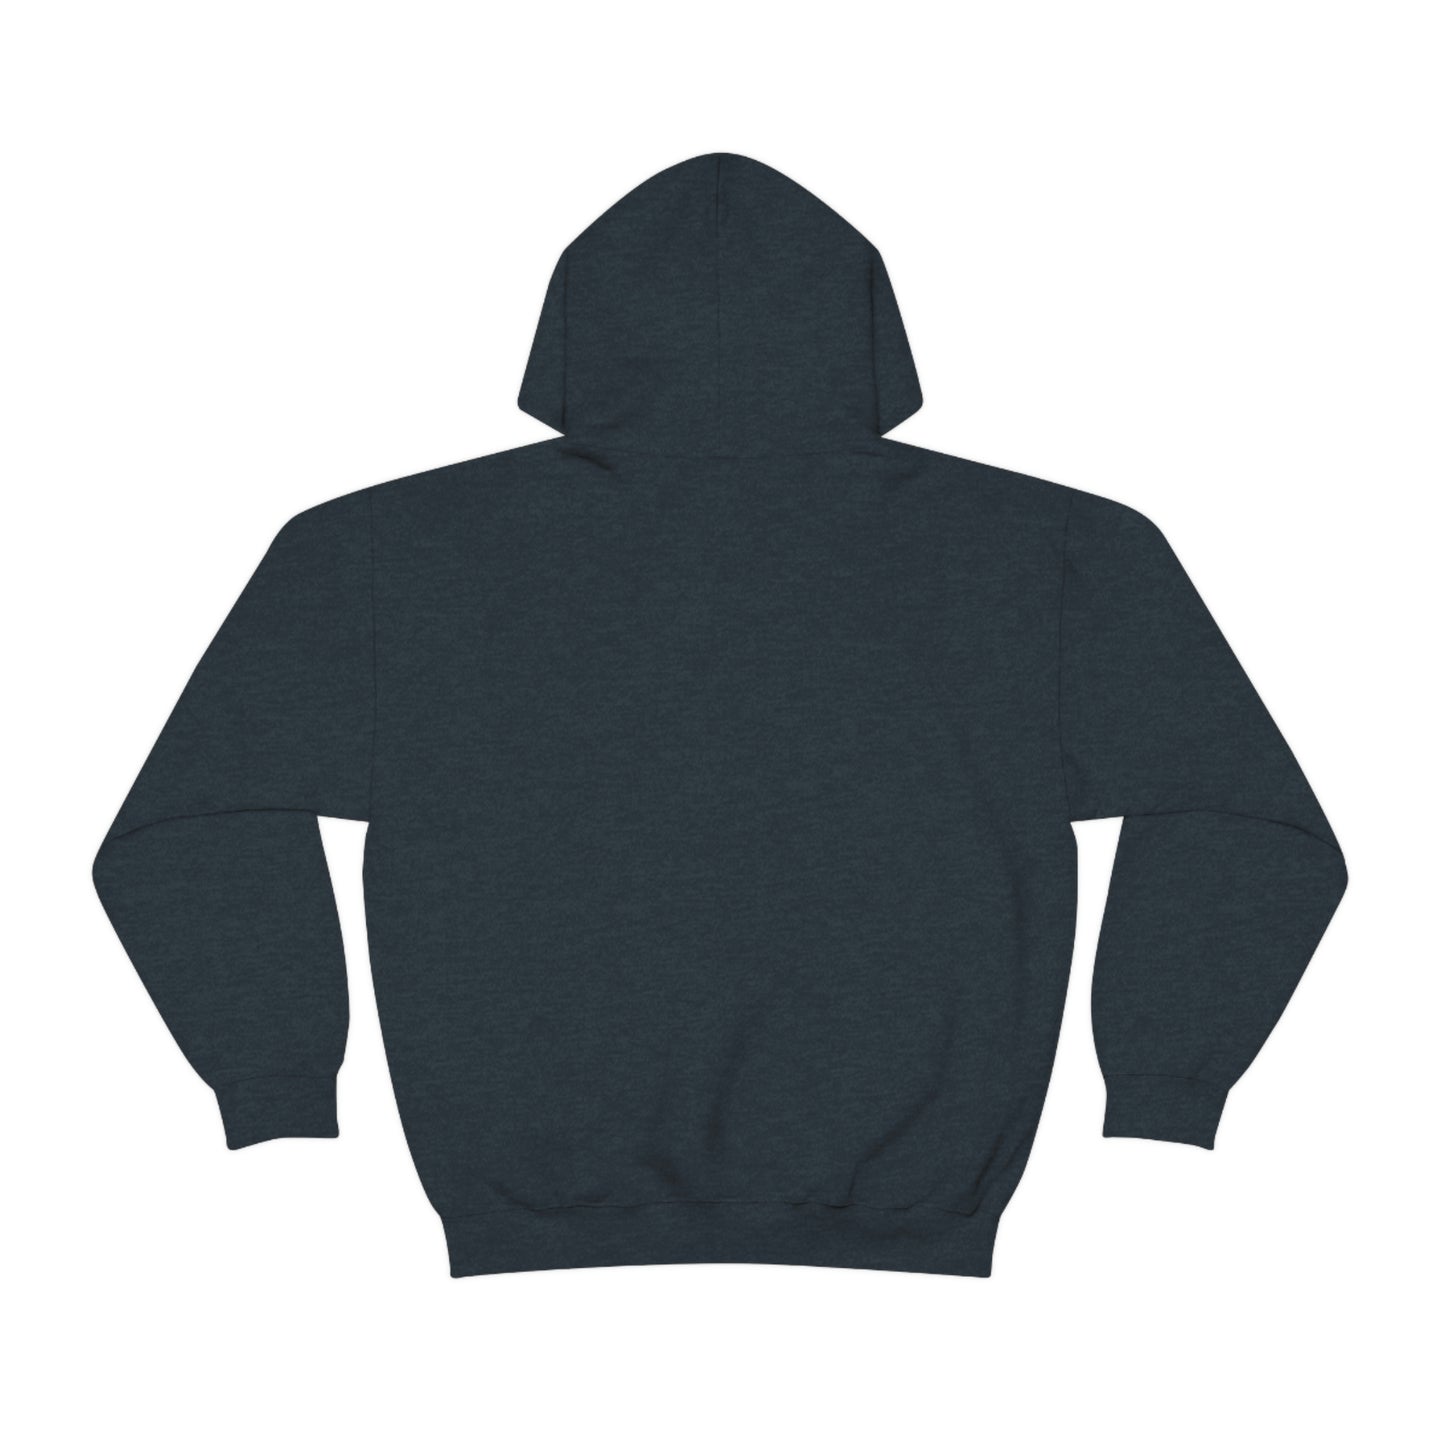 Certified Unisex Heavy Blend™ Hooded Sweatshirt